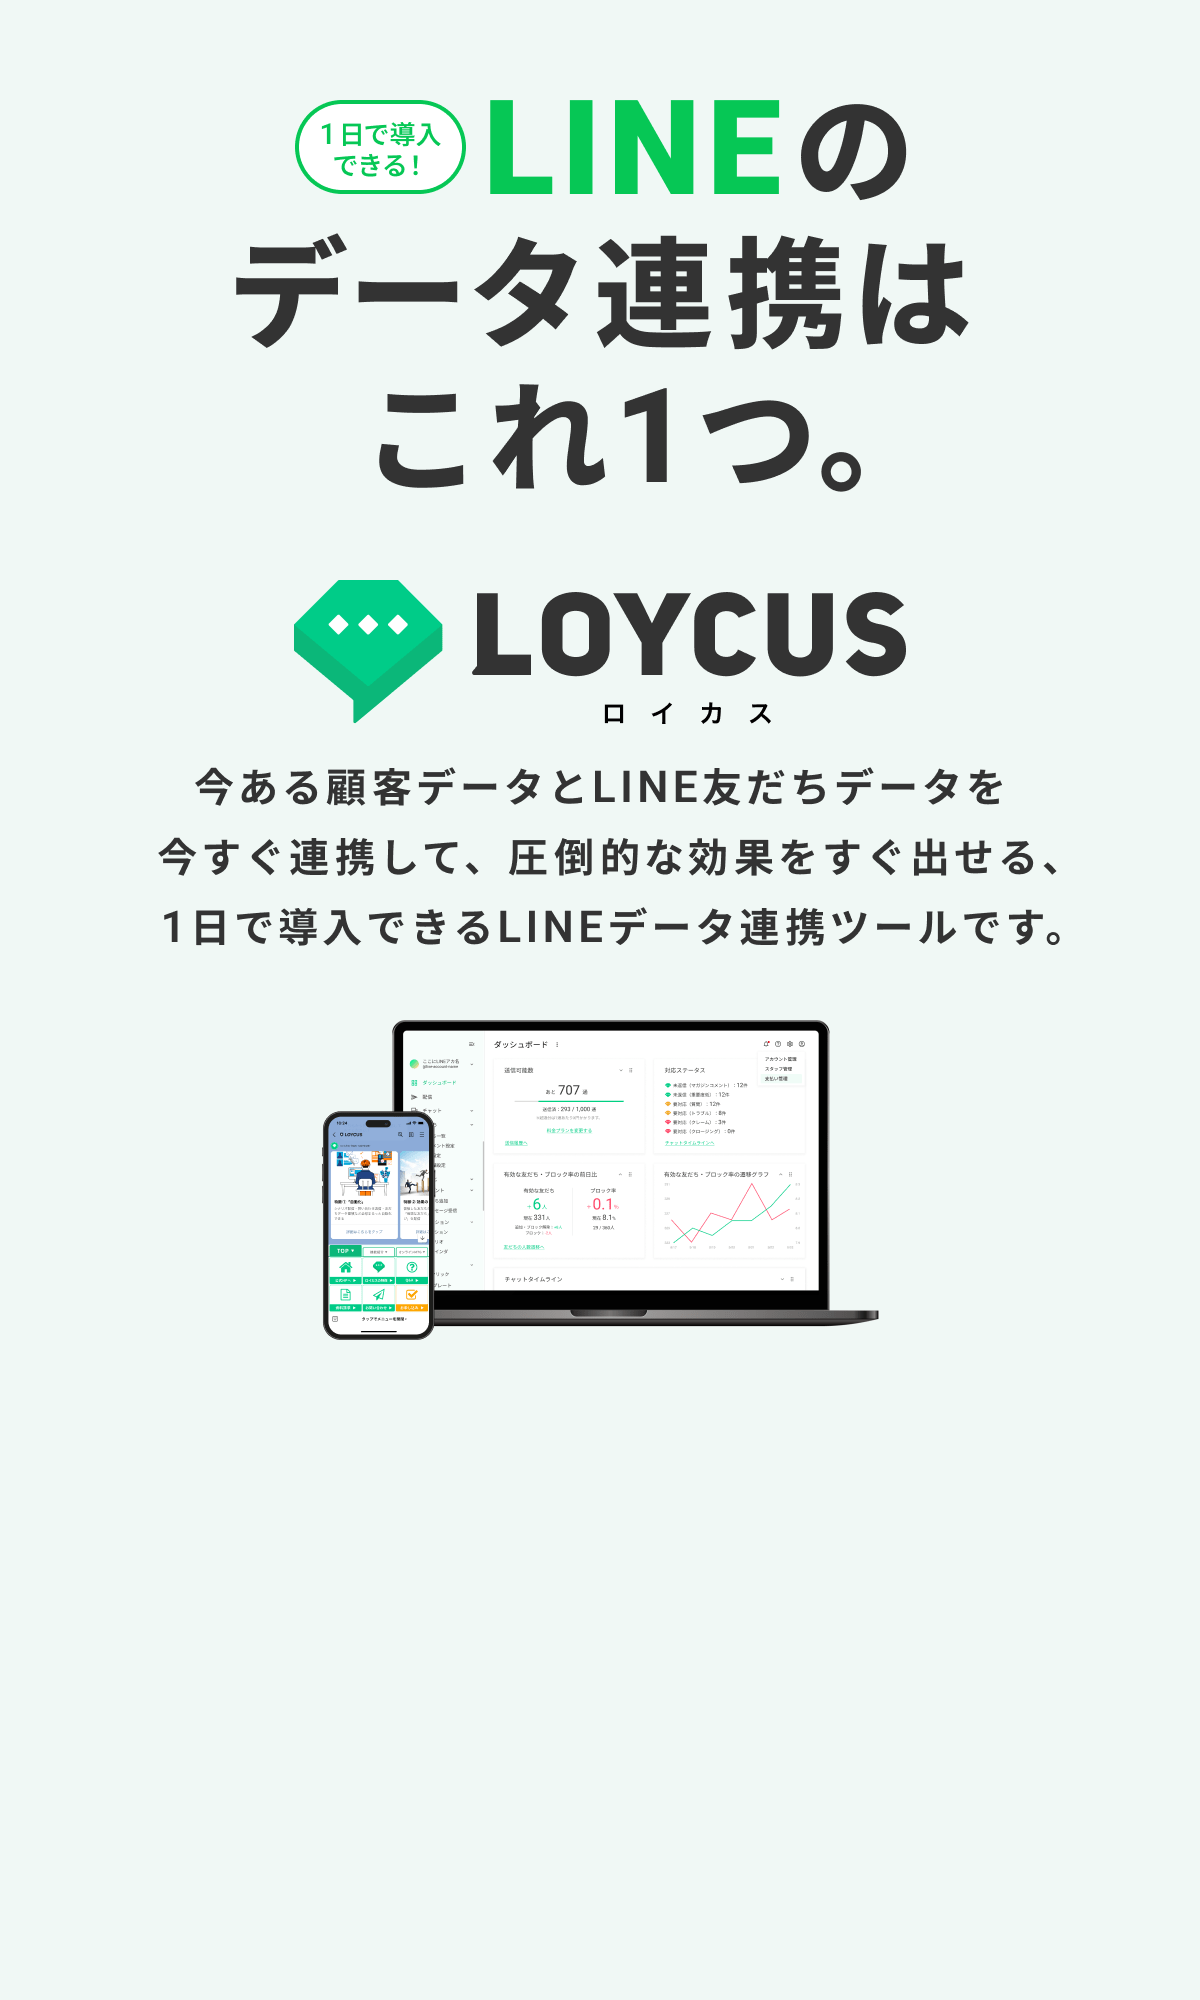 LINEのデータ連携はこれ1つ。LOYCUS（ロイカス）-今ある顧客データとLINE友だちデータを今すぐ連携して、圧倒的な効果をすぐ出せる、1日で導入できるLINEデータ連携ツールです。-